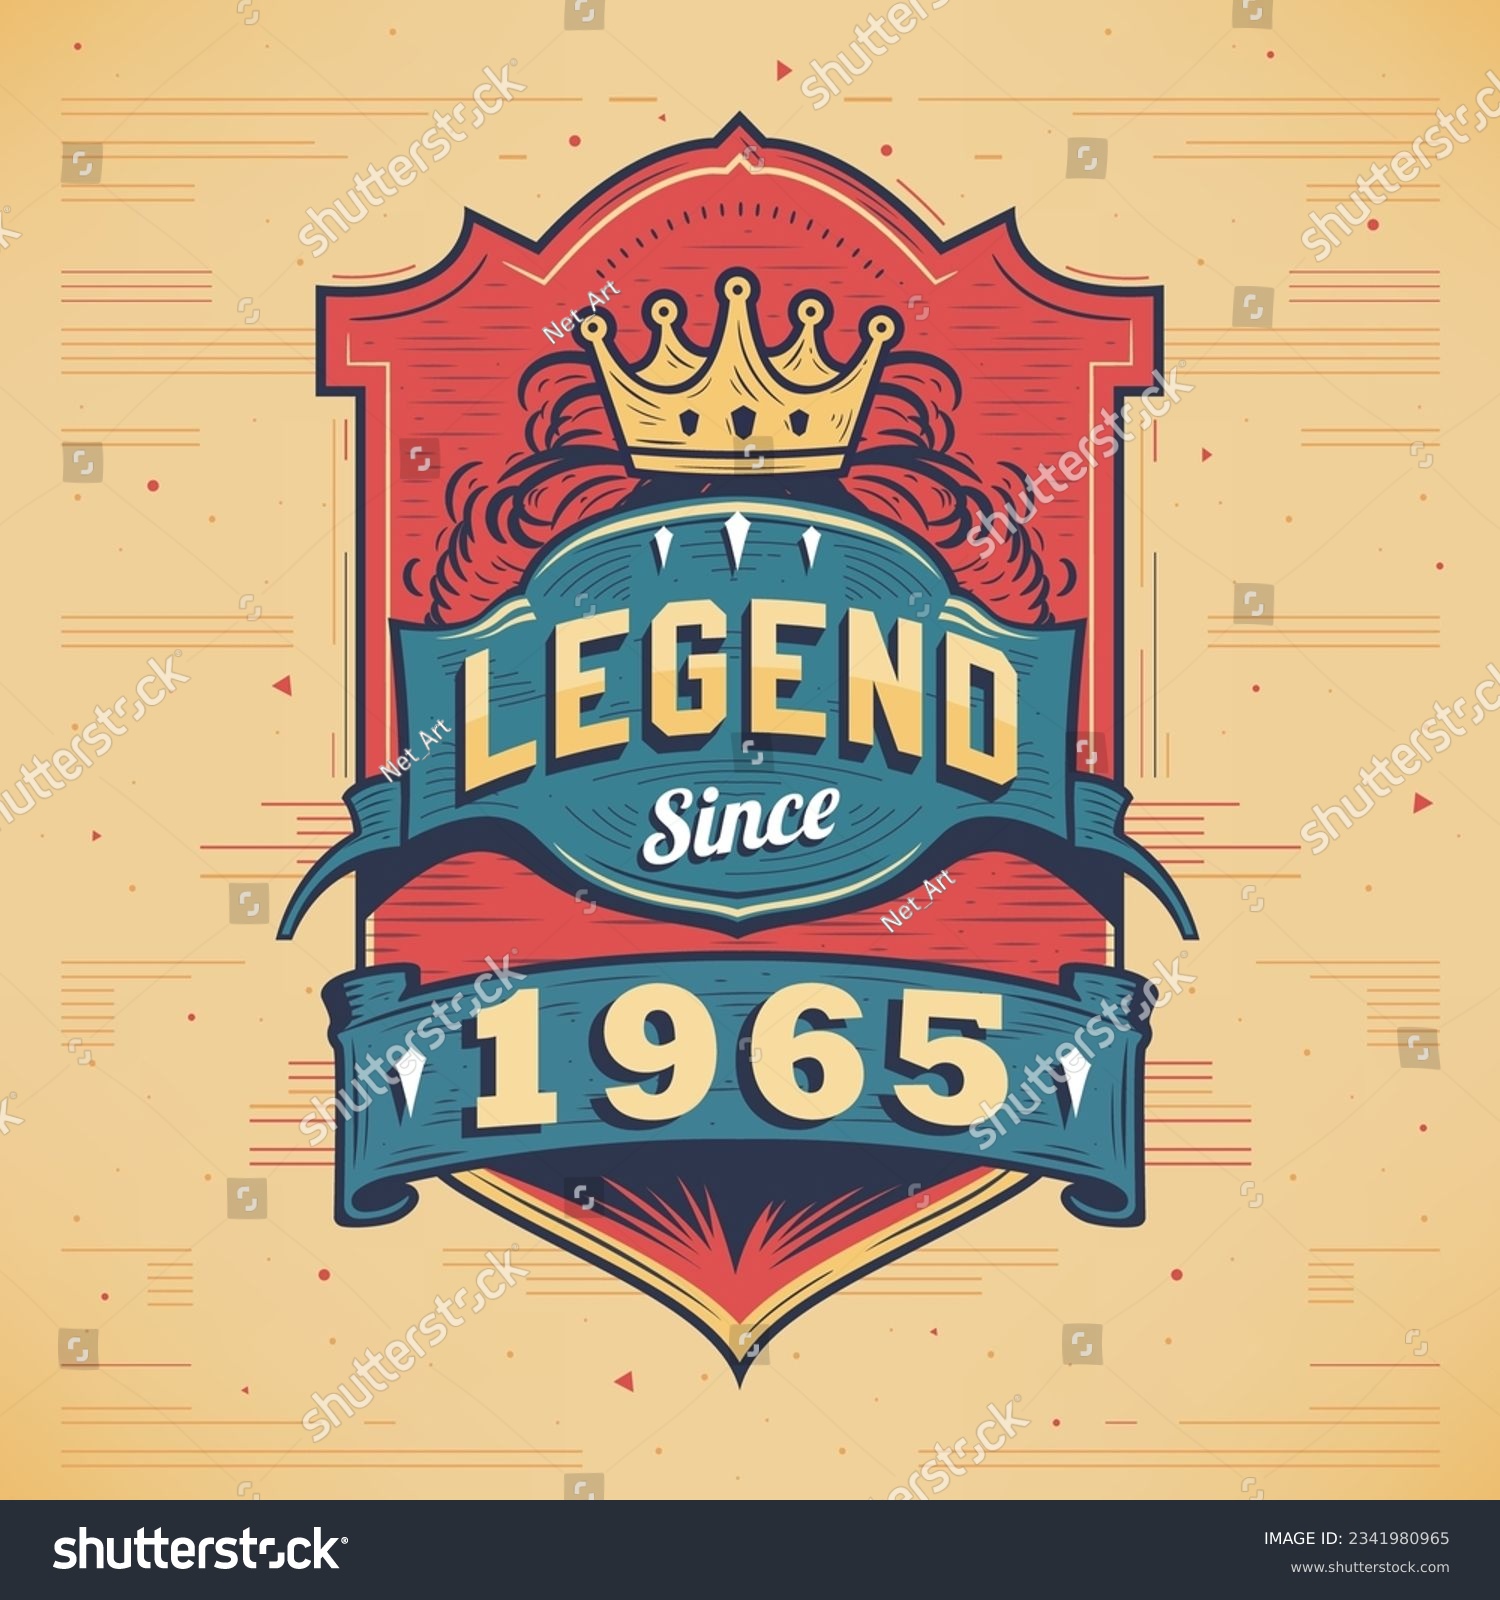 SVG of Legend Since 1965 Vintage T-shirt - Born in 1965 Vintage Birthday Poster Design. svg